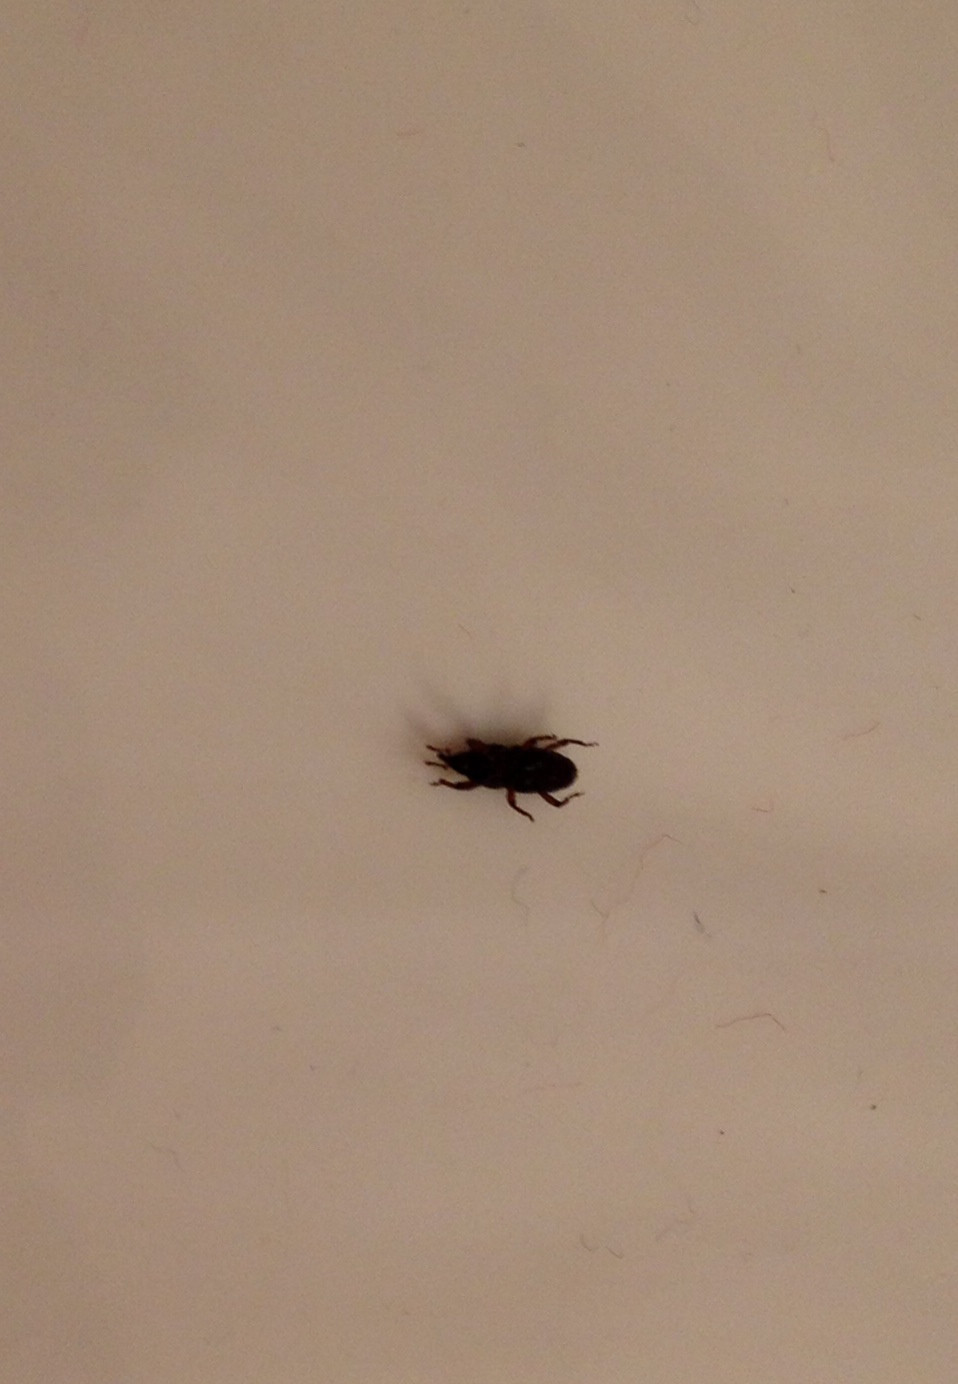 Small Black Flies In Bathroom
 We keep seeing these bugs in the bathroom tub & floor